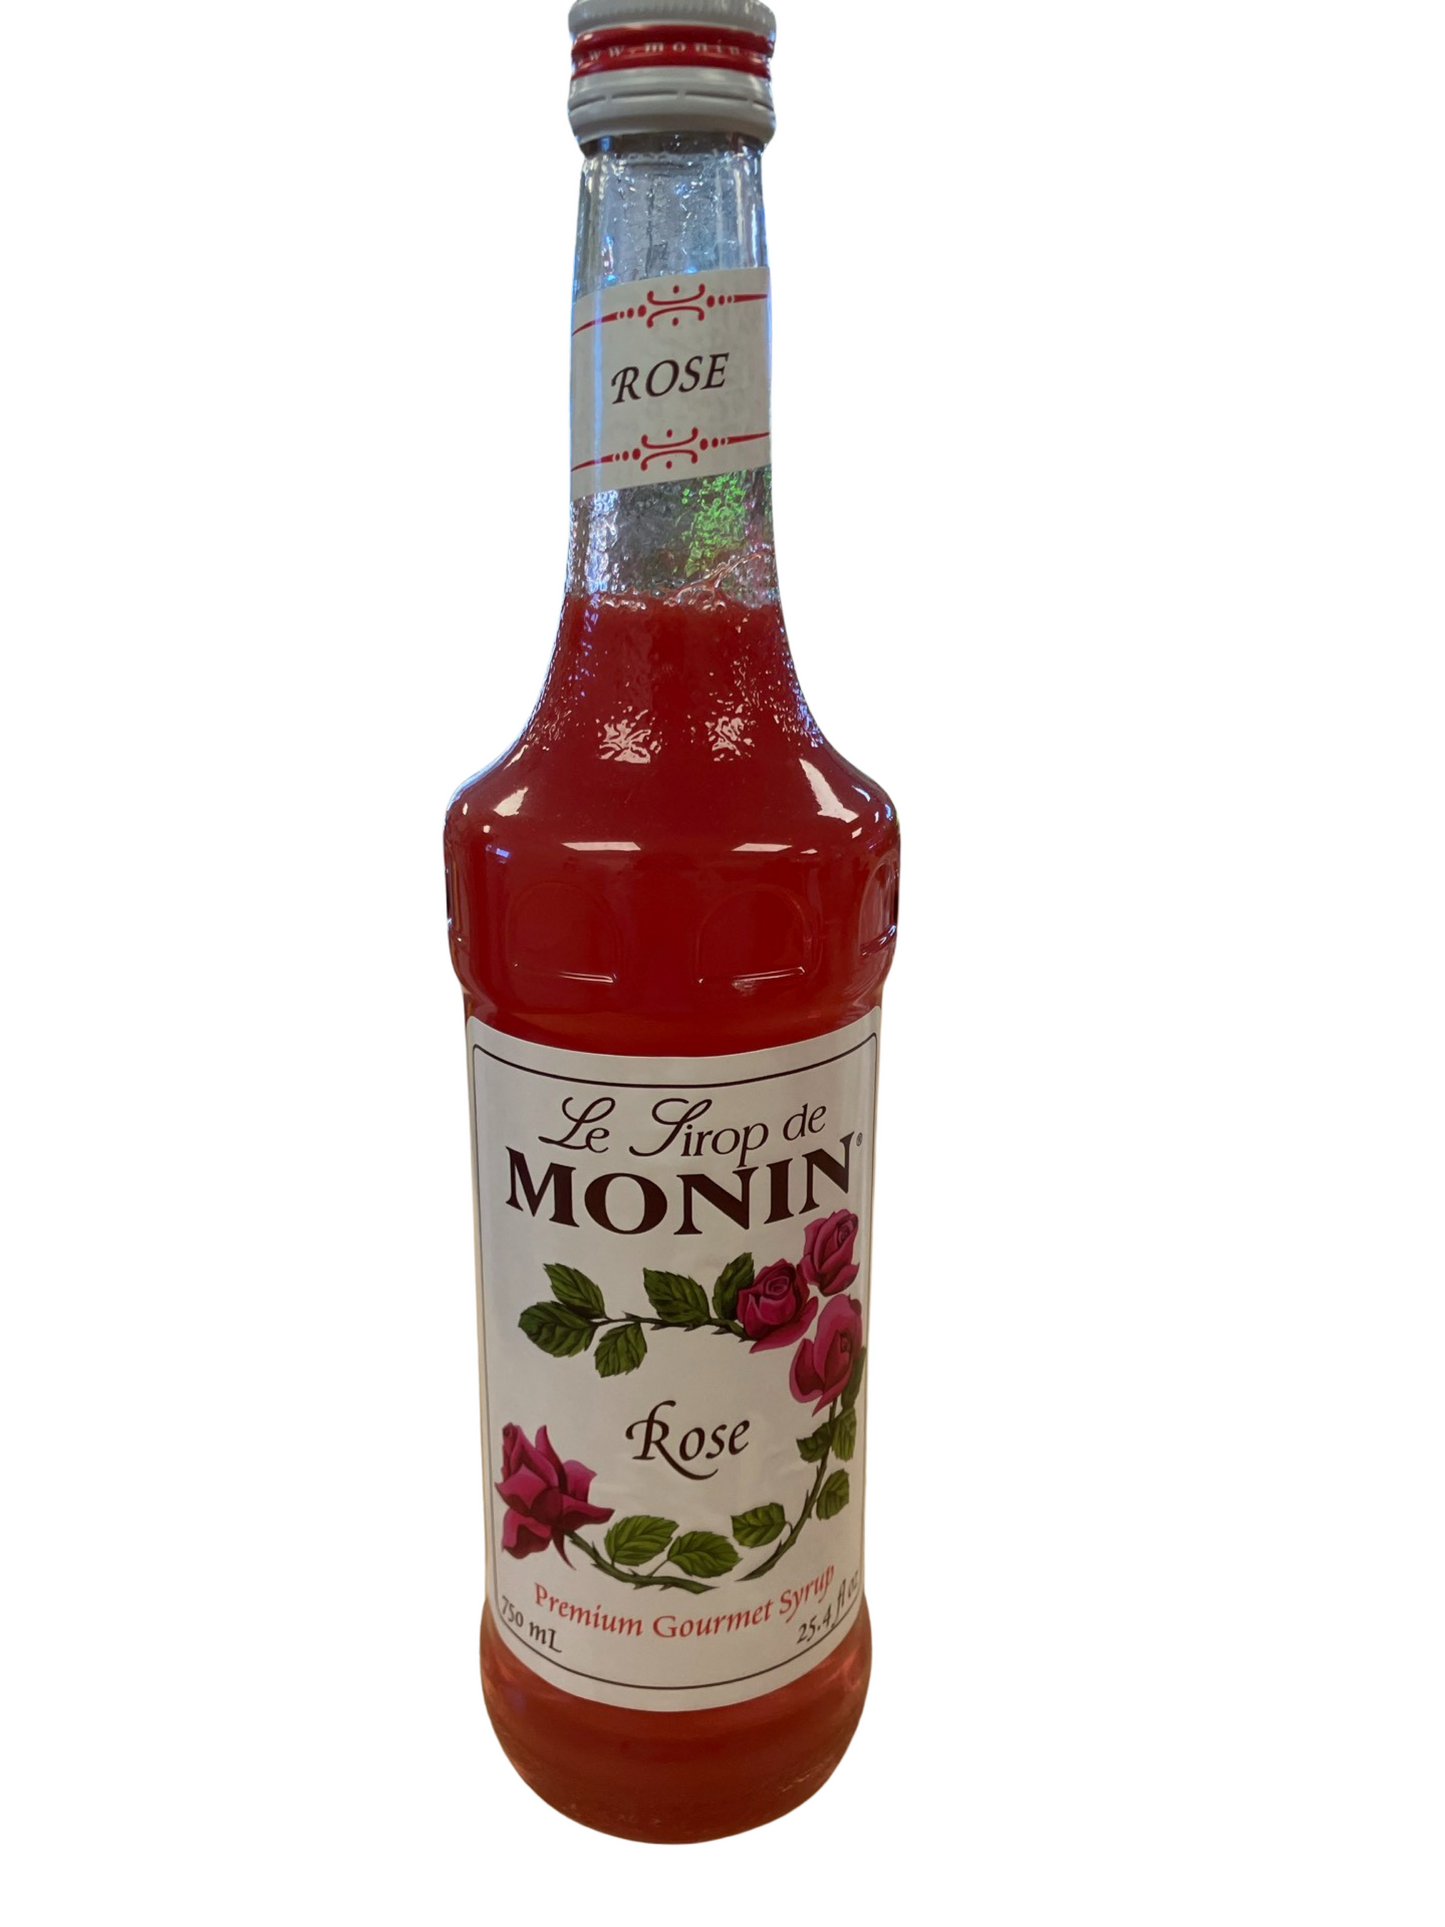 Monin - Rose - 750ml - Glass Bottle